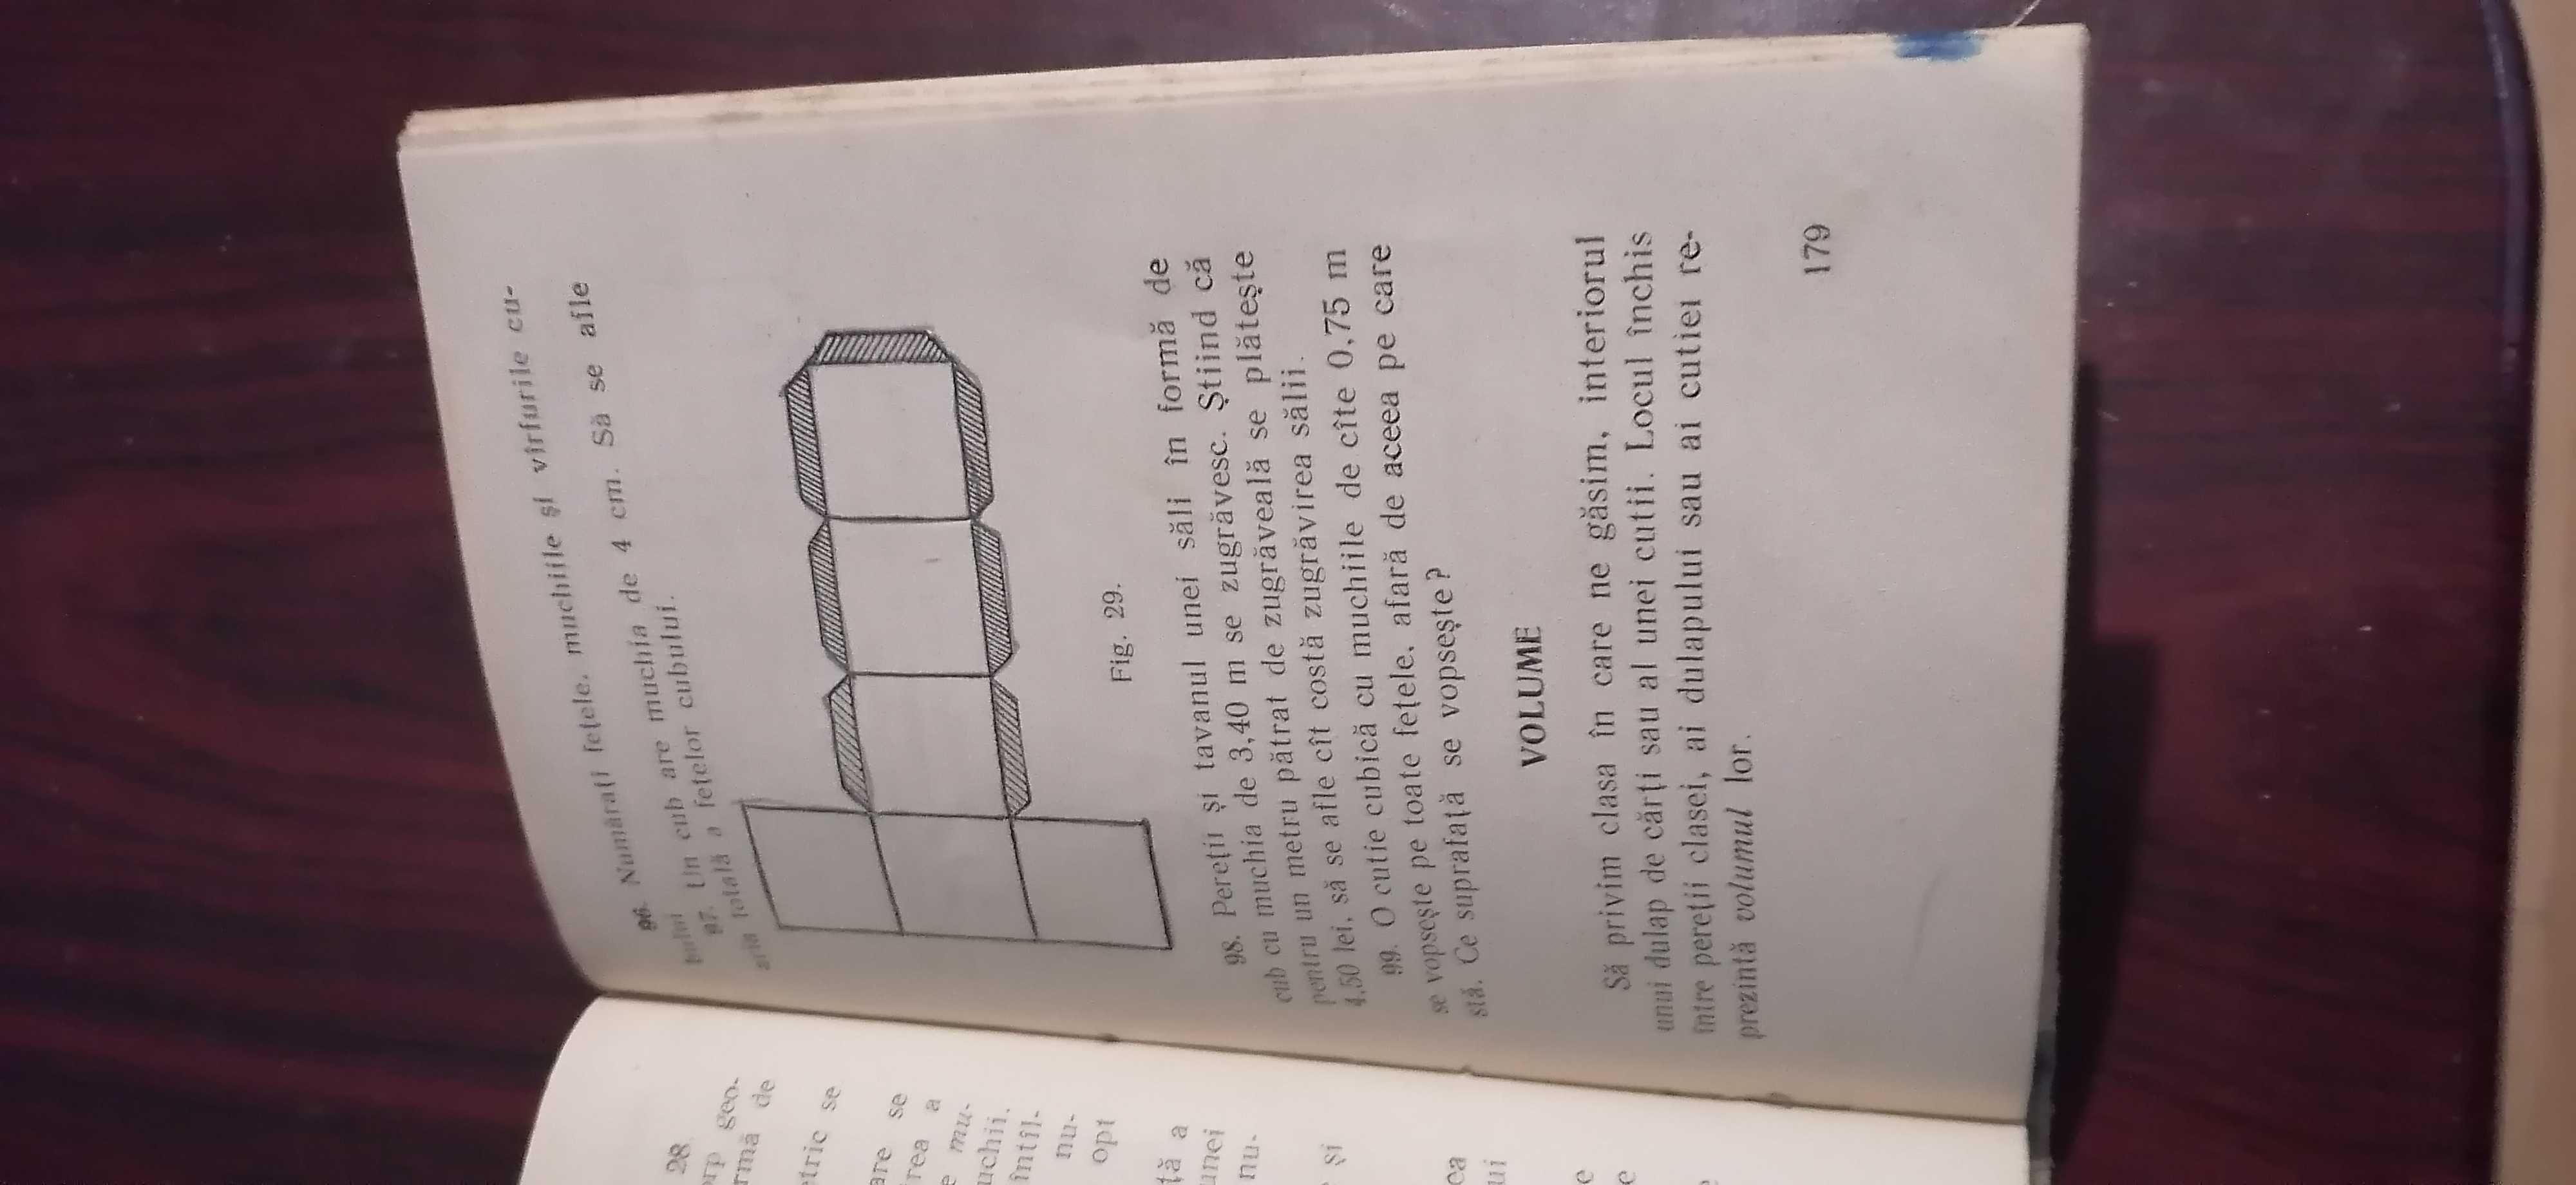 manual  pentru  clasa  iv   1963   pret  70  lei